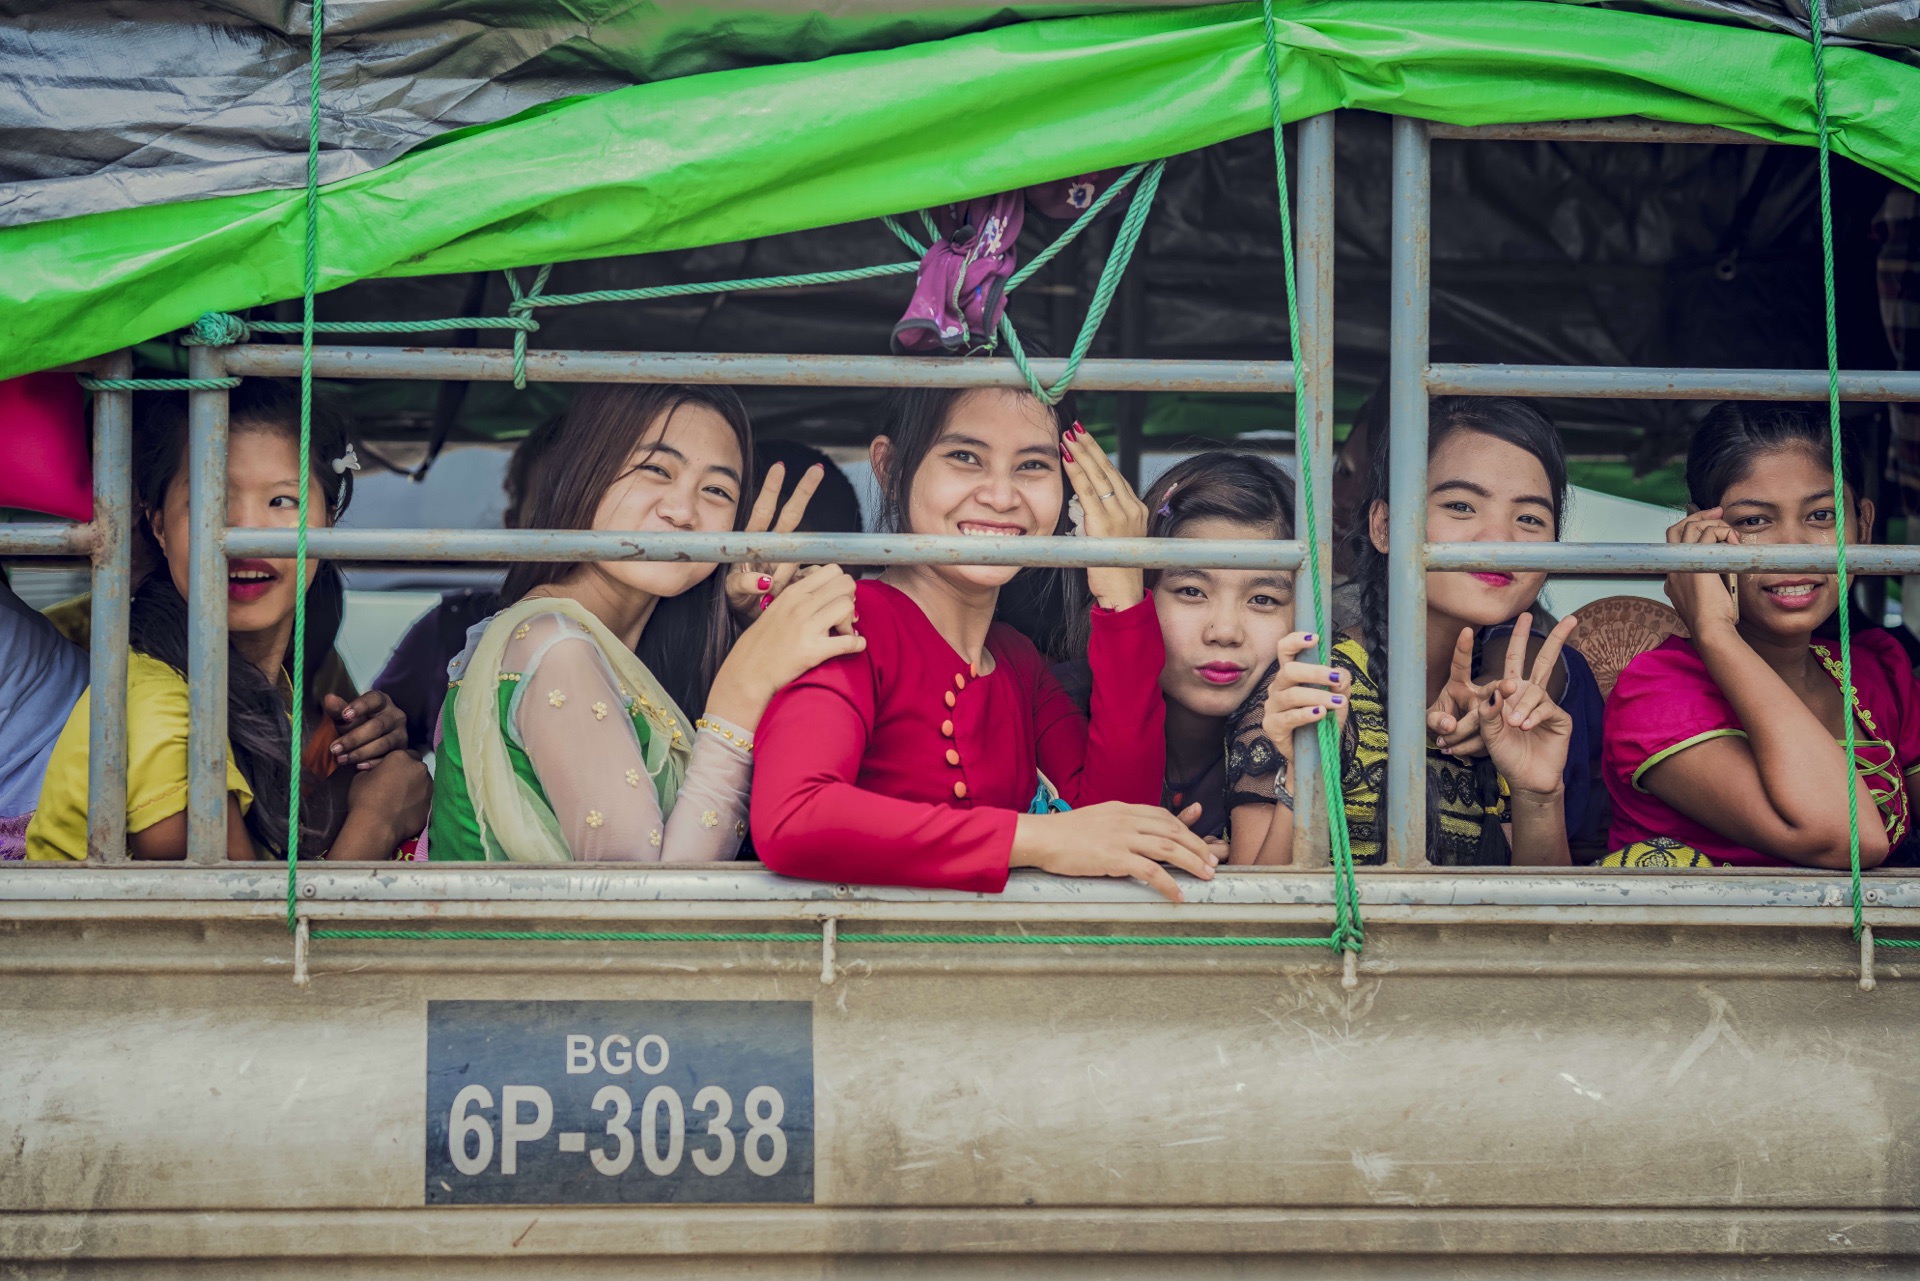 【缅甸旅行tips】简单的写一点缅甸旅行的小心得，当然游记攻略都会安排!  👏【物价】:虽然不想写2